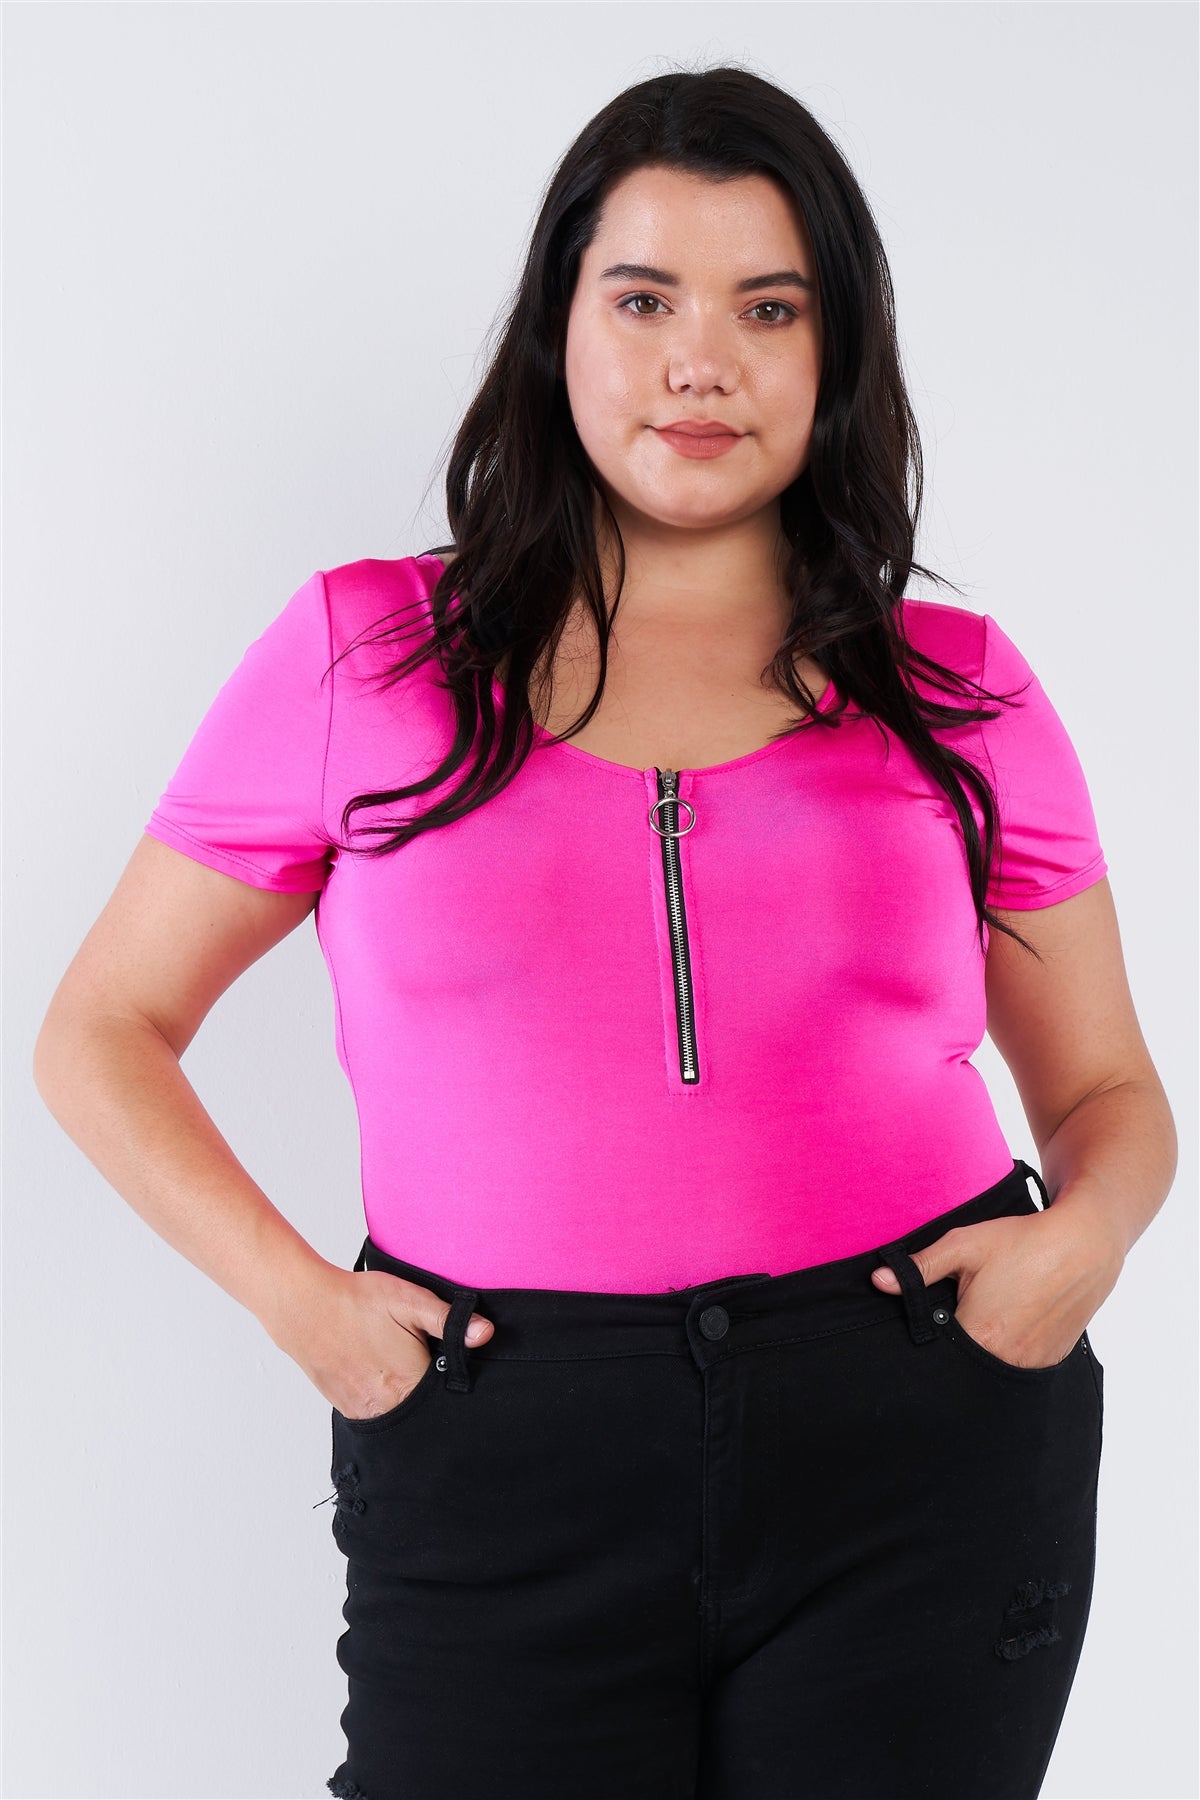 Fuchsia Voluptuous (+) Plus Size Bodysuit - 2 colors - women's shirt at TFC&H Co.